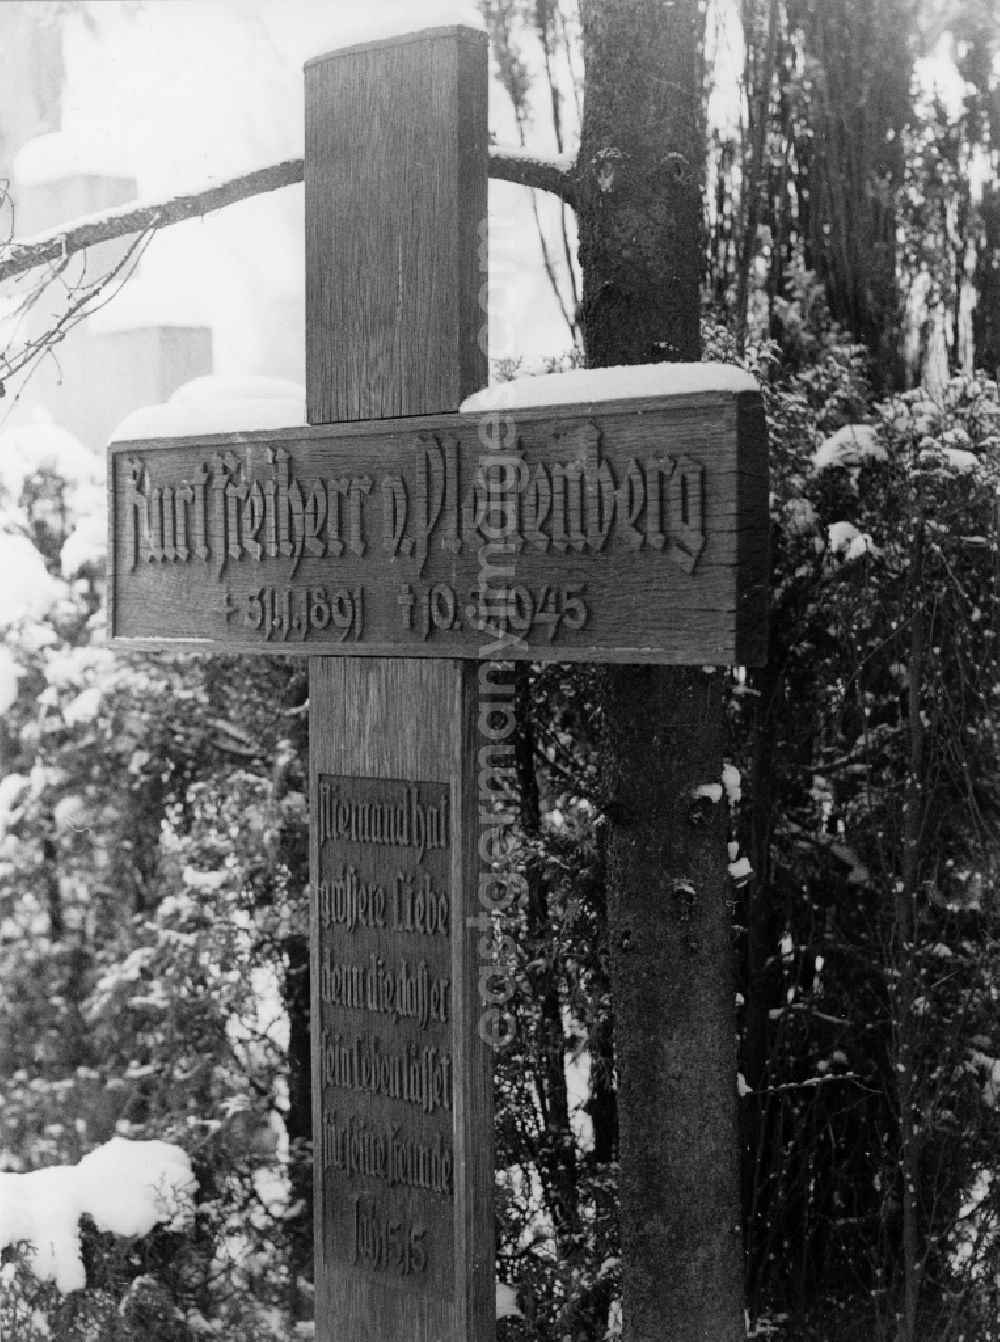 GDR image archive: Potsdam - Cross for Kurt Freiherr von Plettenberg on the Bornstedter Cemetery in Potsdam in East Germany